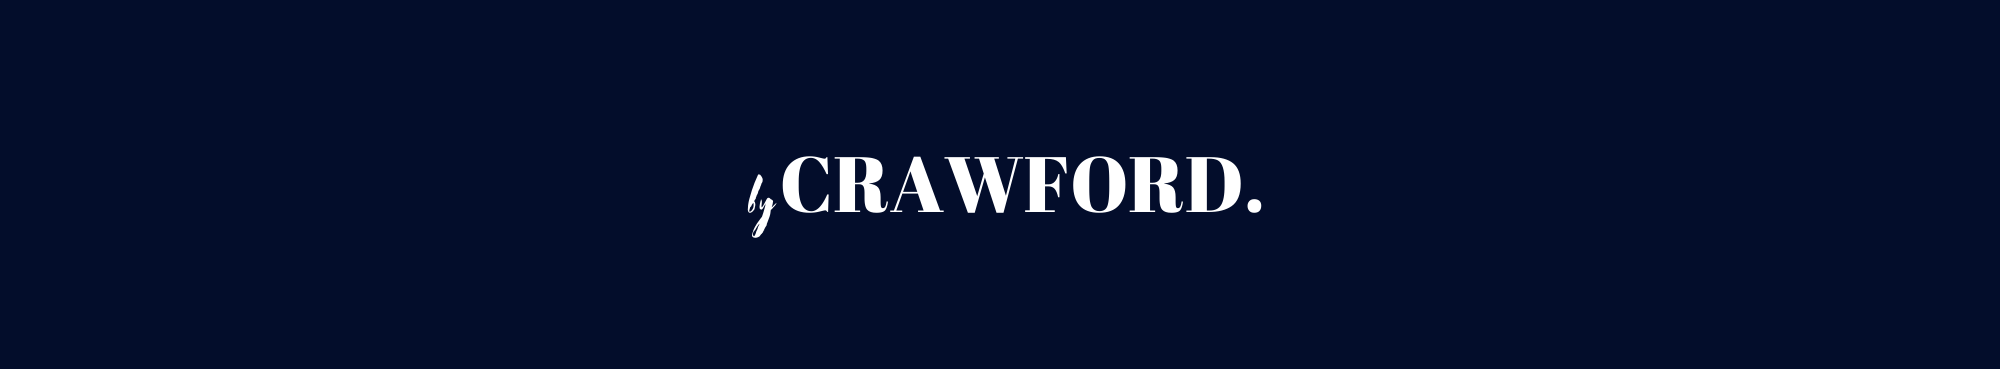 Sam Crawford profil başlığı